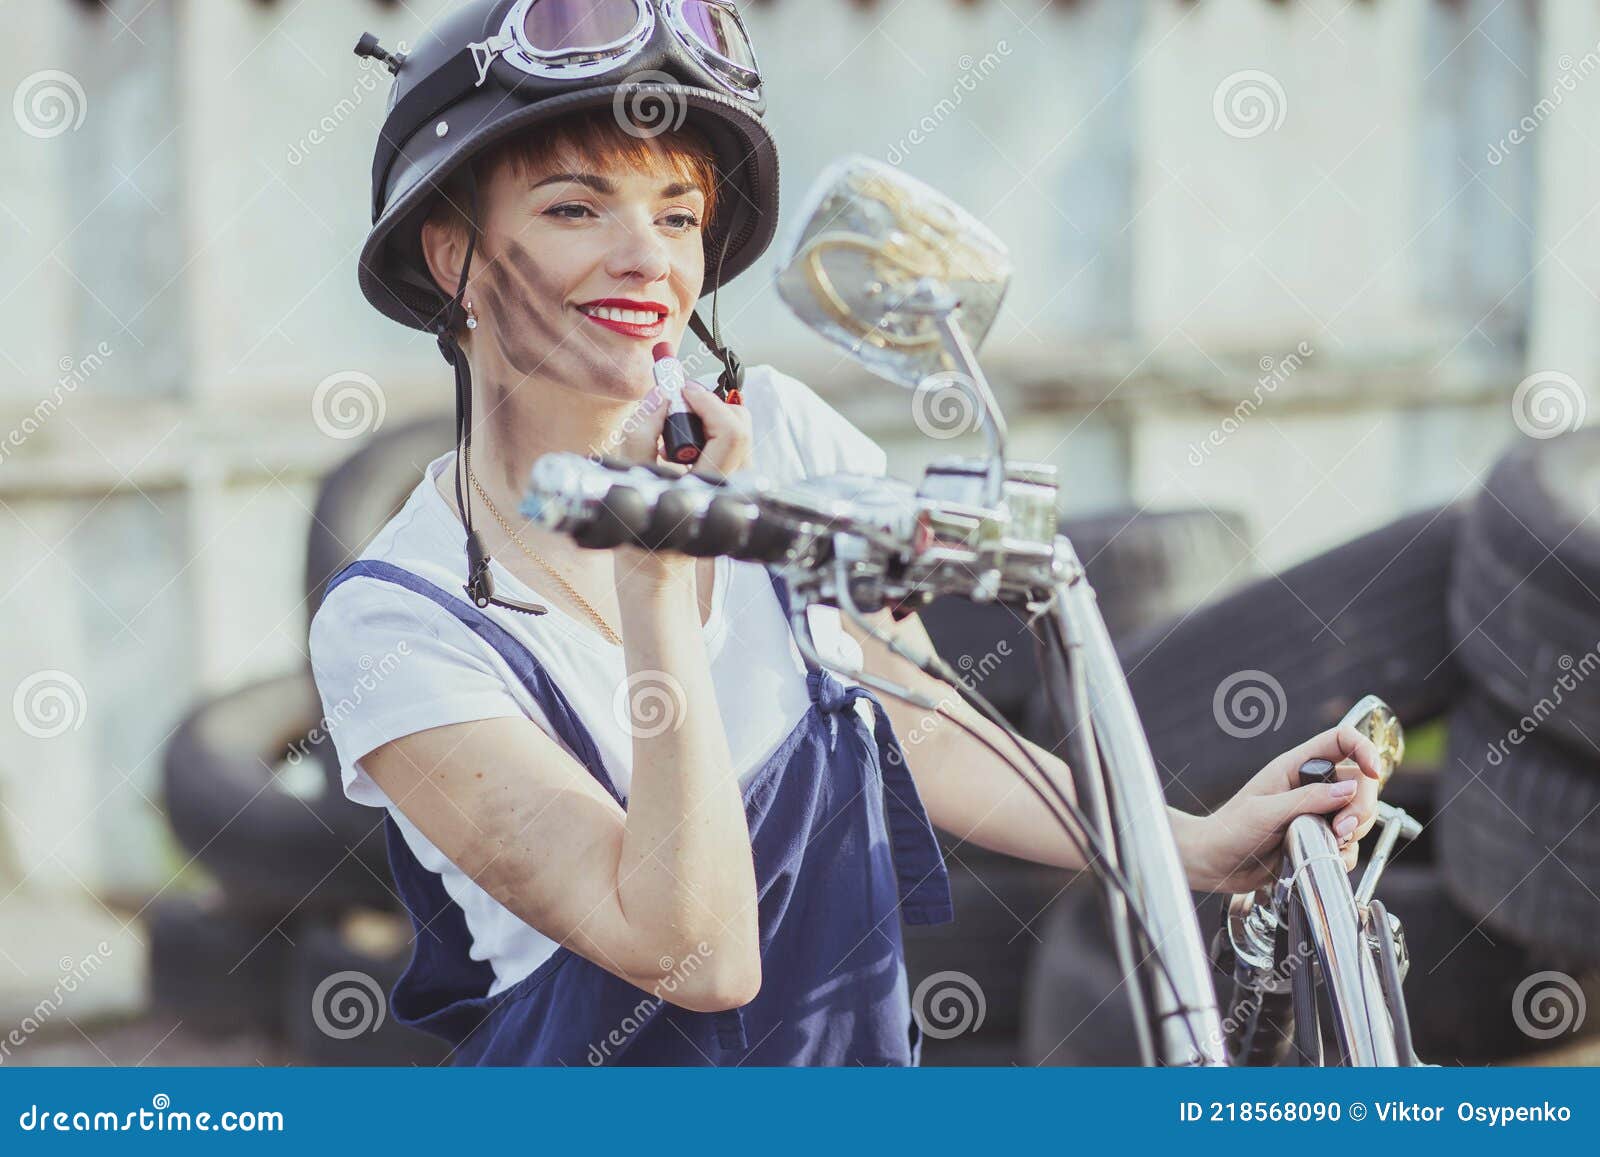 Mädchen Automechaniker in Einem Helm Sieht in Einem Motorrad Spiegel Und  Malt Lippen Stockfoto - Bild von radfahrer, lippenstift: 218568090